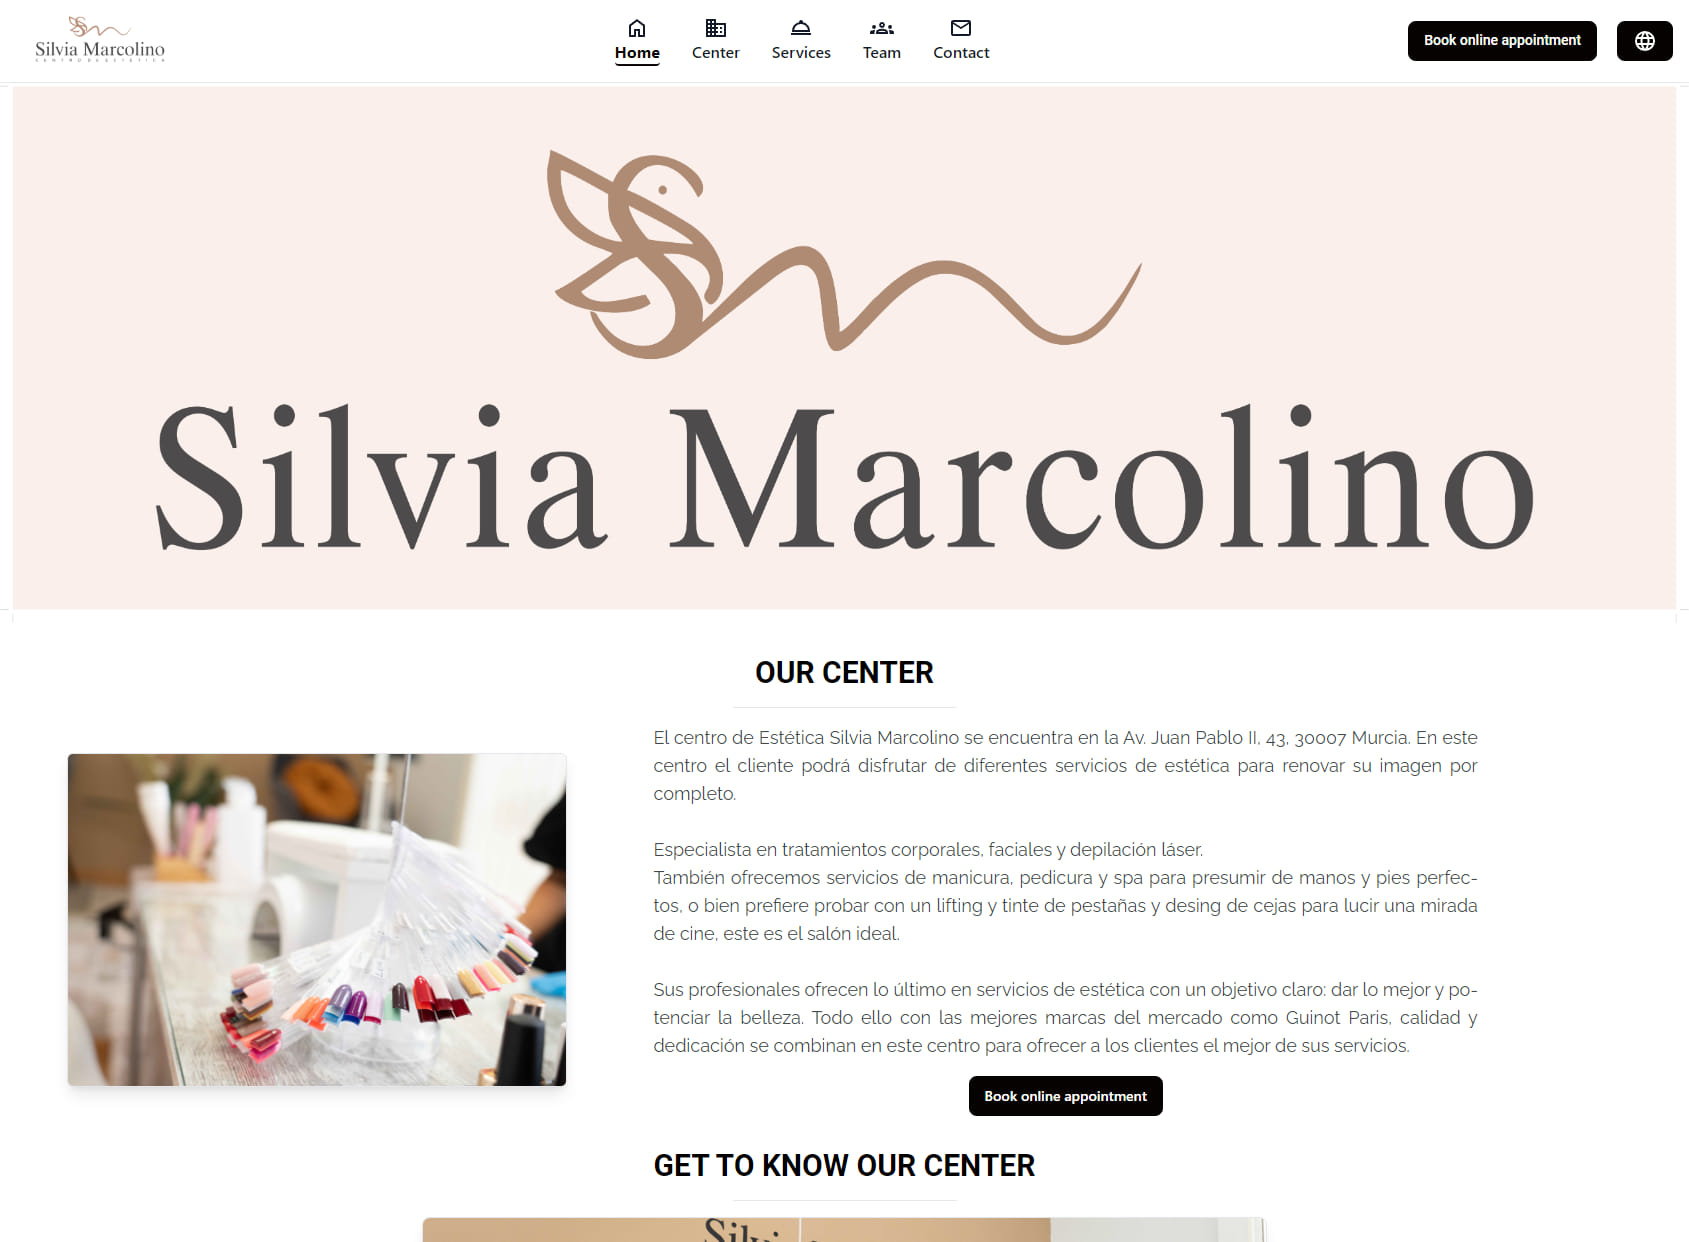 Centro de estética Silvia Marcolino